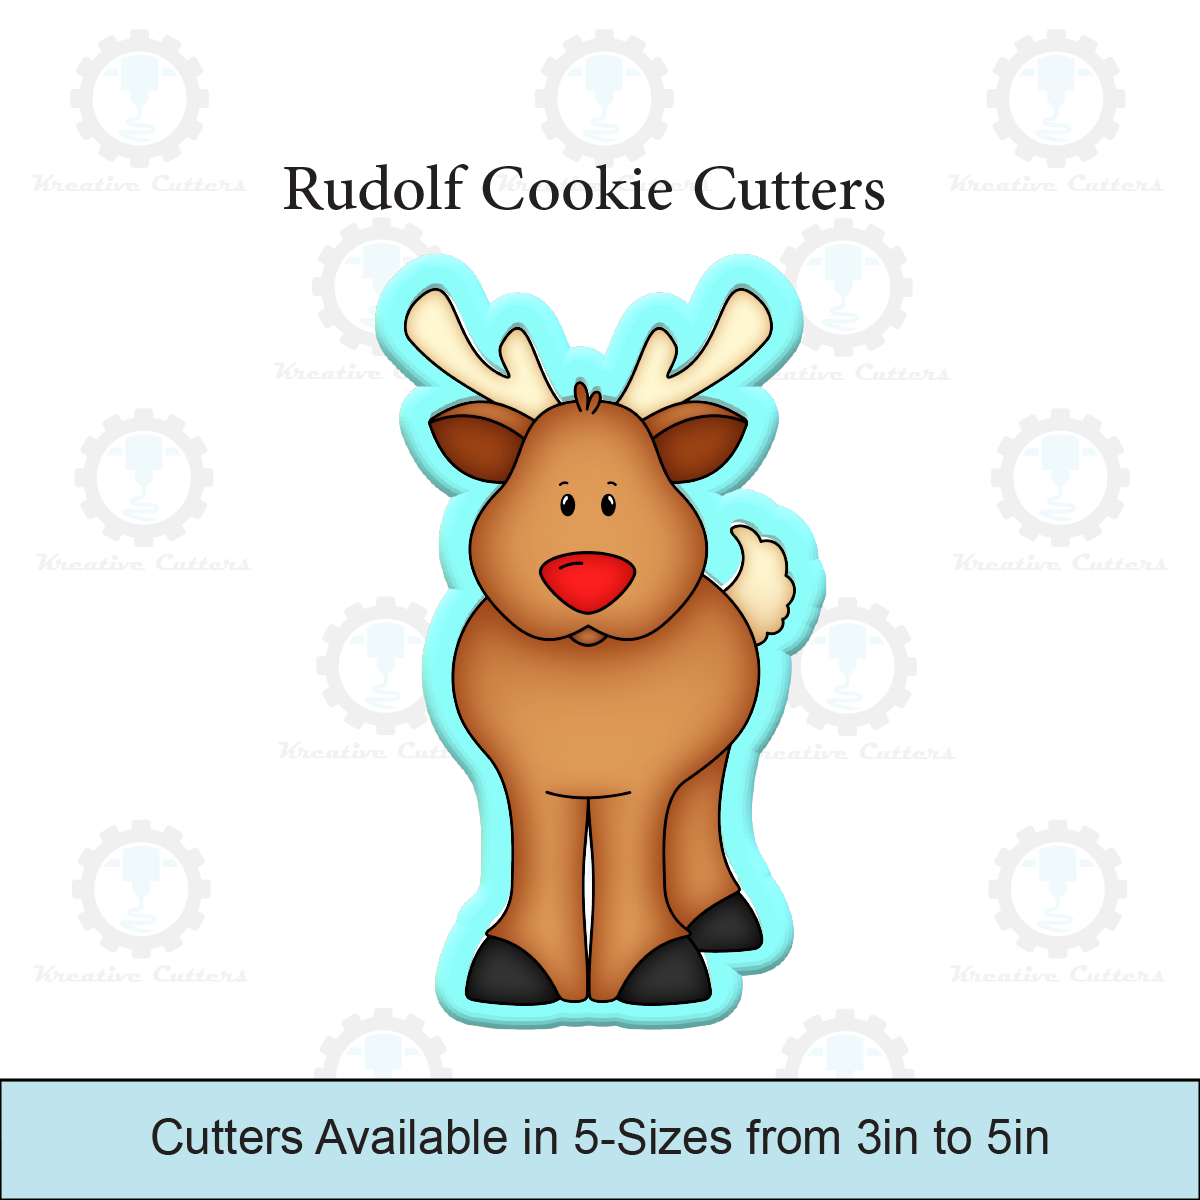 Rudolf Cookie Cutters